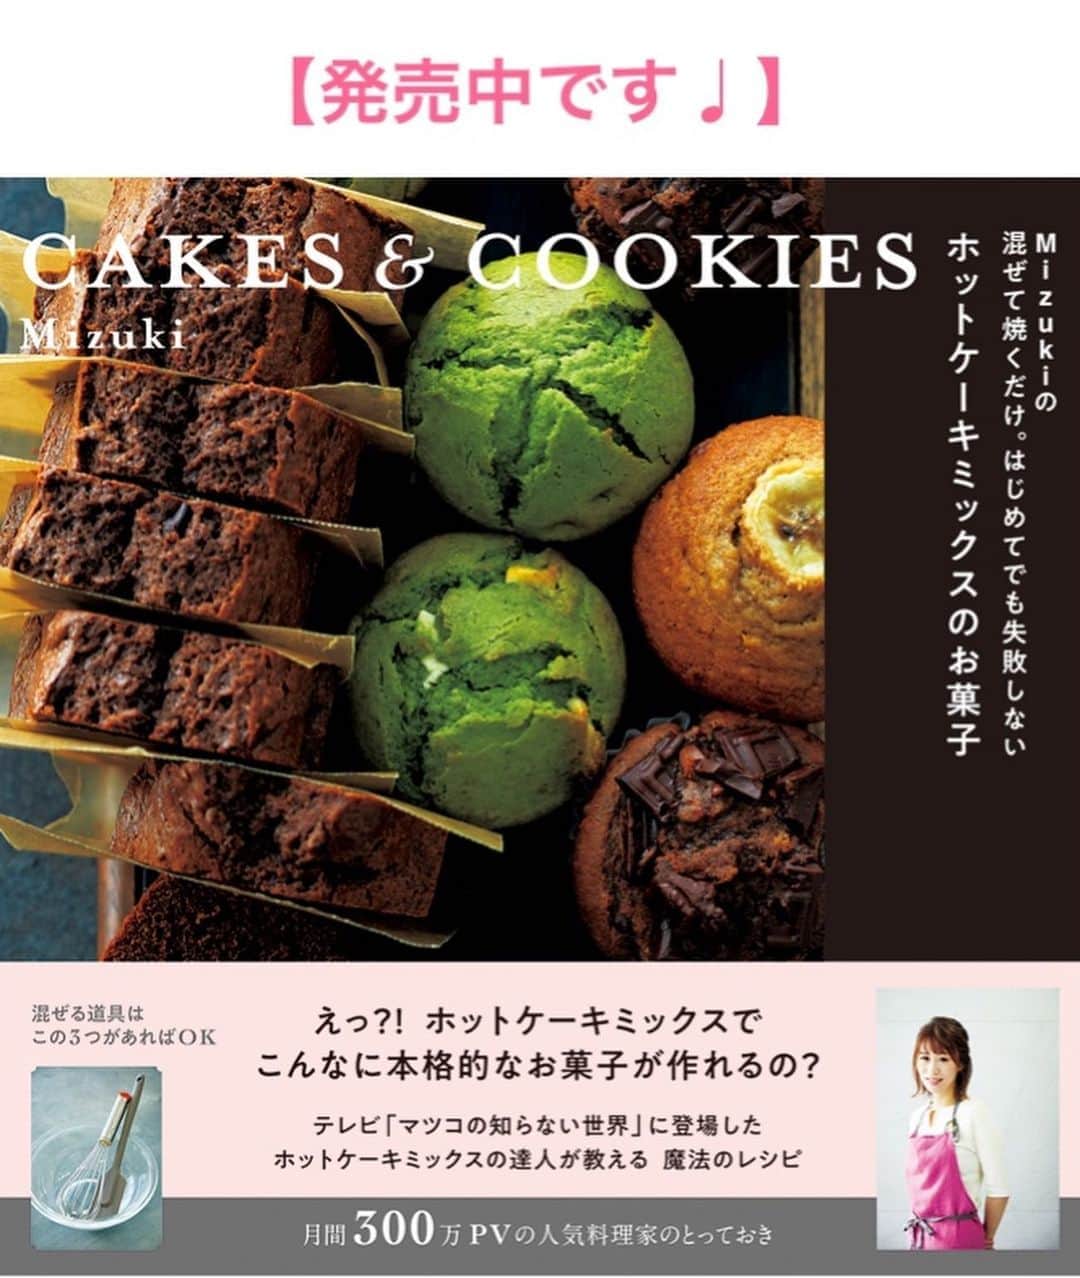 Mizuki【料理ブロガー・簡単レシピ】さんのインスタグラム写真 - (Mizuki【料理ブロガー・簡単レシピ】Instagram)「・﻿ 【レシピ】ーーーーーーーーーーーーー﻿ ♡ジュワ〜っと！ねぎだれ豚もやし♡﻿ ーーーーーーーーーーーーーーーーーー﻿ ﻿ ﻿ ﻿ おはようございます(*^^*)﻿ ﻿ 今日はがっつり節約おかず！﻿ ［ねぎだれ豚もやし］のご紹介です♡﻿ 使用するのは豚こま×もやしで﻿ コスパ抜群ですよ〜(*´艸`)﻿ ﻿ もやしはさっと炒めてシャキシャキに♩﻿ 豚肉はカリカリに焼いて﻿ ねぎだれをジュワっとかけたらもう最高♡﻿ ﻿ あっという間にできるので﻿ よかったらお試し下さいね(*^^*)﻿ ﻿ ﻿ ﻿ ーーーーーーーーーーーーーーーーーーーー﻿ 【2人分】﻿ 豚こま切れ肉...170g﻿ 片栗粉...大1﻿ もやし...1袋﻿ ごま油...大1﻿ 塩こしょう...少々﻿ ●万能ねぎ(小口切り)...3本〜﻿ ●醤油・酢...各大1.5﻿ ●砂糖・白ごま...各大1﻿ ﻿ 1.●を合わせてねぎだれを作る。豚肉は適当に広げて片栗粉をまぶす。﻿ 2.フライパンにごま油小1を強火で熱し、もやしを炒めて塩こしょうを振り、器に盛り付けておく。﻿ 3.そのままのフライパンにごま油小2を中火で熱し、豚肉を両面カリッとなるまで焼く。﻿ 4.2に3をのせ、ねぎだれをかける。﻿ ーーーーーーーーーーーーーーーーーーーー﻿ ﻿ ﻿ ﻿ 《ポイント》﻿ ♦︎万能ねぎの量はお好みでOK！代わりに長ねぎ(みじん切り)を使用しても♩﻿ ♦︎豚肉は適当に広げ、手の平でギュッと押さえると平たくなります♩﻿ ﻿ ﻿ ﻿ ﻿ ﻿ ﻿ ﻿ ﻿ ＿＿＿＿＿＿＿＿＿＿＿＿＿＿＿＿＿＿＿﻿ 📕6刷重版しました📕﻿ 簡単・時短！ 毎日のごはんがラクになる﻿ ✨🦋 【 #Mizukiの今どき和食 】🦋✨﻿ ＿＿＿＿＿＿＿＿＿＿＿＿＿＿＿＿＿＿＿﻿ なるべく少ない材料で﻿ 手間も時間も省きながら﻿ 簡単にできるおいしい和食レシピ♩﻿ 簡単に失敗なくマスターできる一冊で﻿ もっと気軽に、カジュアルに﻿ 和食を楽しんで下さいね(*^^*)﻿ ＿＿＿＿＿＿＿＿＿＿＿＿＿＿＿＿＿＿＿﻿ ﻿ ﻿ ﻿ ＿＿＿＿＿＿＿＿＿＿＿＿＿＿＿＿＿＿＿﻿ 🎀6刷重版しました🎀﻿ 混ぜて焼くだけ。はじめてでも失敗しない！﻿ 【#ホットケーキミックスのお菓子 】﻿ ﻿ 一冊まるっとホケミスイーツ♩﻿ 普段のおやつから﻿ 特別な日にも使えるレシピを﻿ この一冊に詰め込みました(*^^*)﻿ ホットケーキミックスを使えば﻿ 簡単に本格的なお菓子が作れますよ♡﻿ ＿＿＿＿＿＿＿＿＿＿＿＿＿＿＿＿＿﻿ ﻿ ﻿ ﻿ ﻿ ￣￣￣￣￣￣￣￣￣￣￣￣￣￣￣￣￣￣﻿ レシピを作って下さった際や﻿ レシピ本についてのご投稿には﻿ タグ付け( @mizuki_31cafe )して﻿ お知らせいただけると嬉しいです😊💕﻿ ＿＿＿＿＿＿＿＿＿＿＿＿＿＿＿＿＿＿﻿ ﻿ ﻿ ﻿ ﻿ ﻿ #ねぎだれ#カリカリ豚#豚こま#もやし#コスパ#Mizuki#簡単レシピ#時短レシピ#節約レシピ#料理#レシピ#フーディーテーブル#マカロニメイト#おうちごはん#デリスタグラマー#料理好きな人と繋がりたい#食べ物#料理記録#おうちごはんlover#写真好きな人と繋がりたい#foodpic#cooking#recipe#lin_stagrammer#foodporn#yummy#ねぎだれ豚もやしm」8月12日 7時15分 - mizuki_31cafe